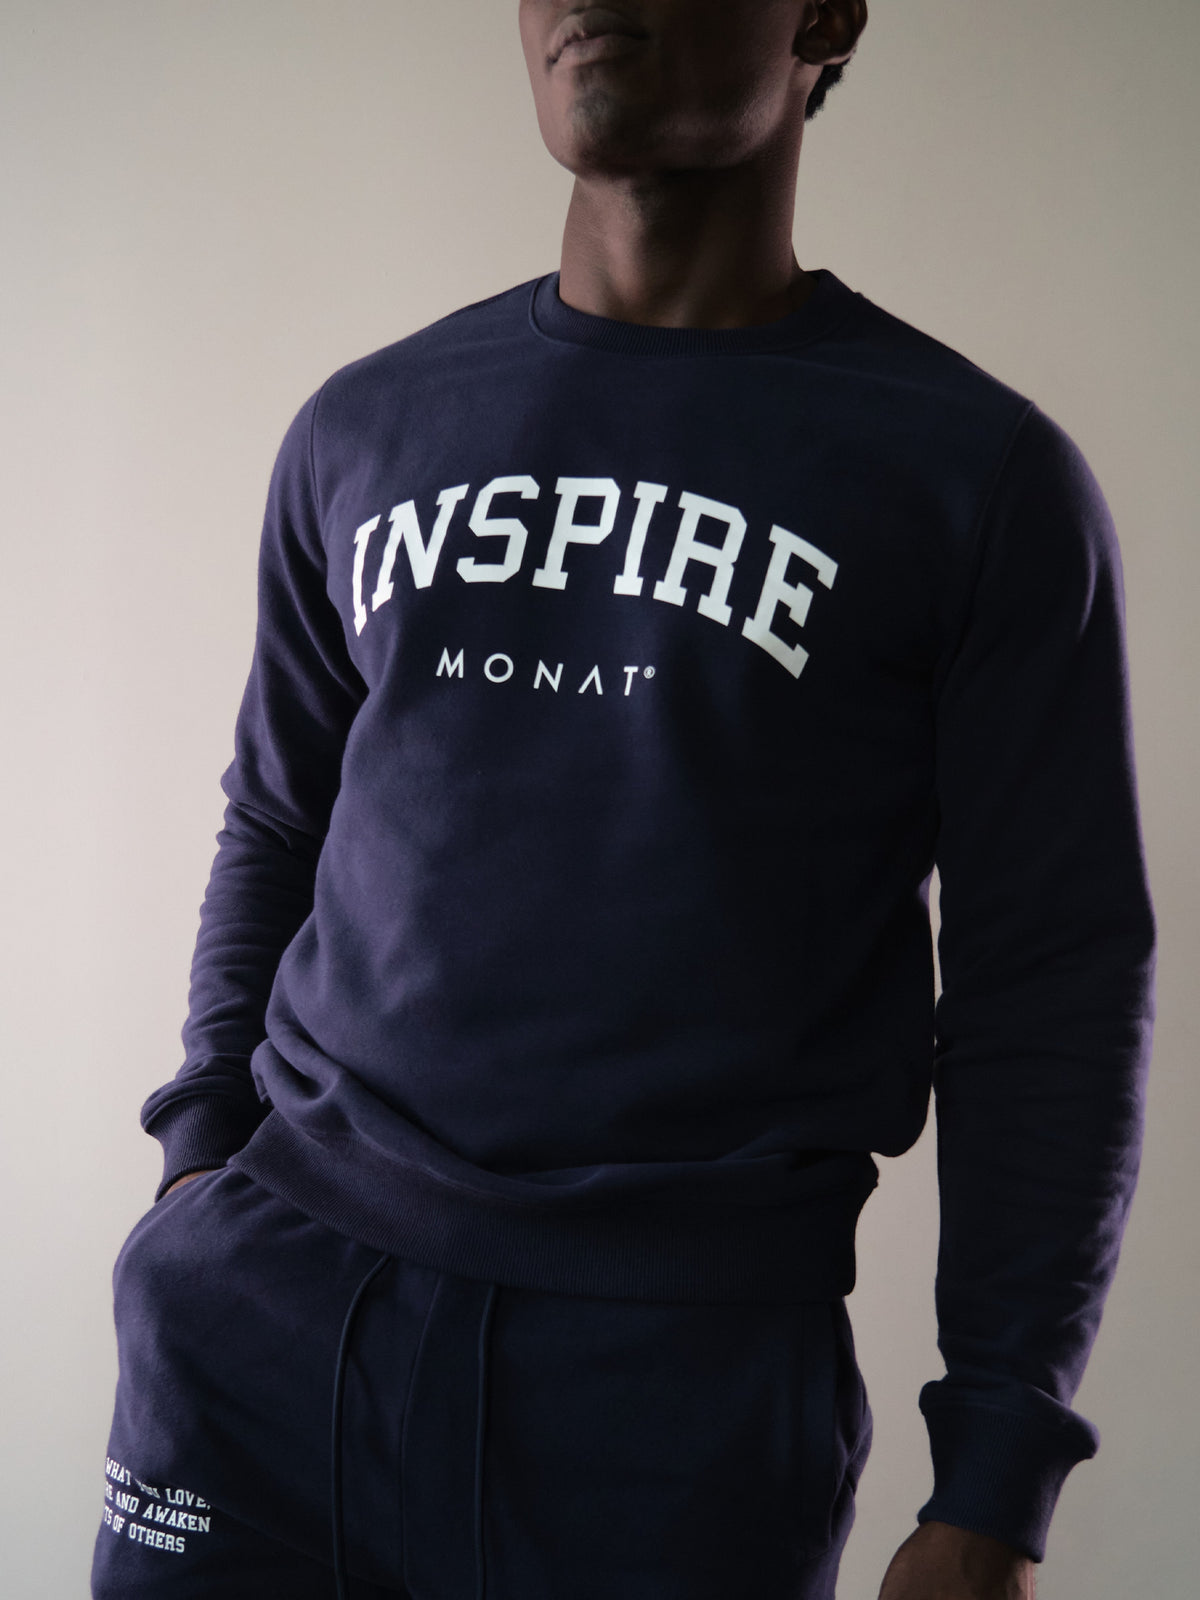 MONAT Inspire Sweatshirt- Navy